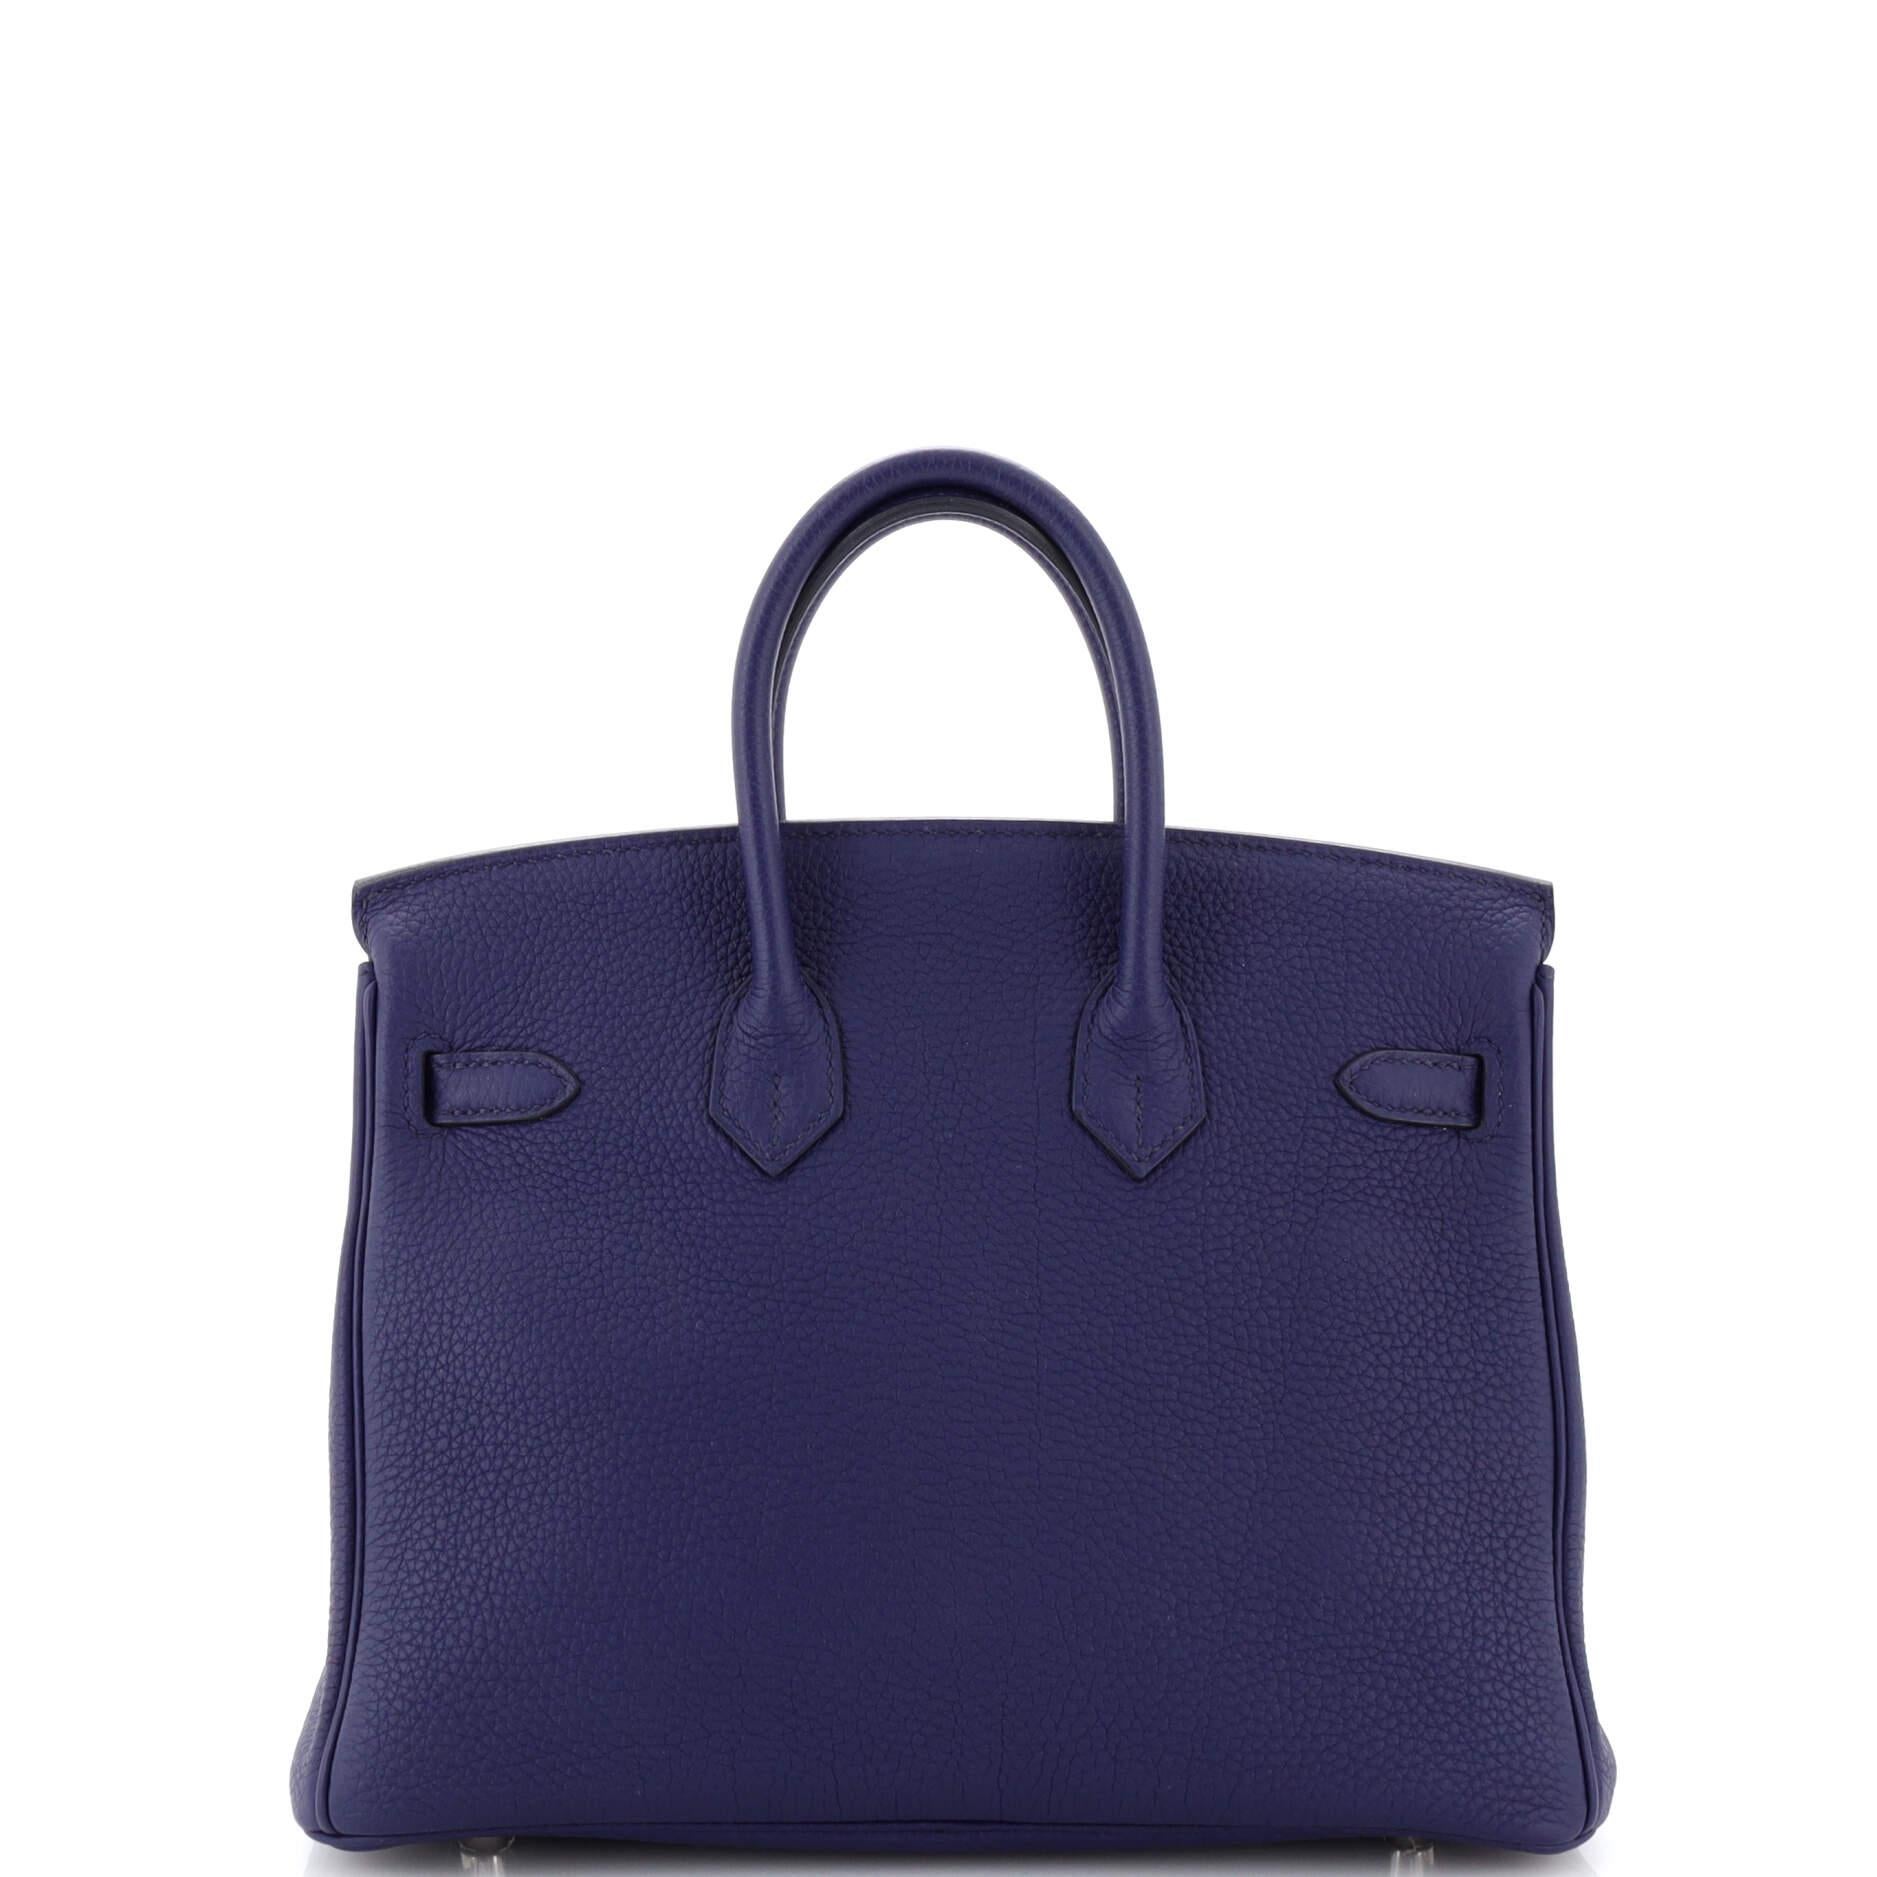 Women's or Men's Hermes Officier Birkin Bag Limited Edition Togo with Swift 25